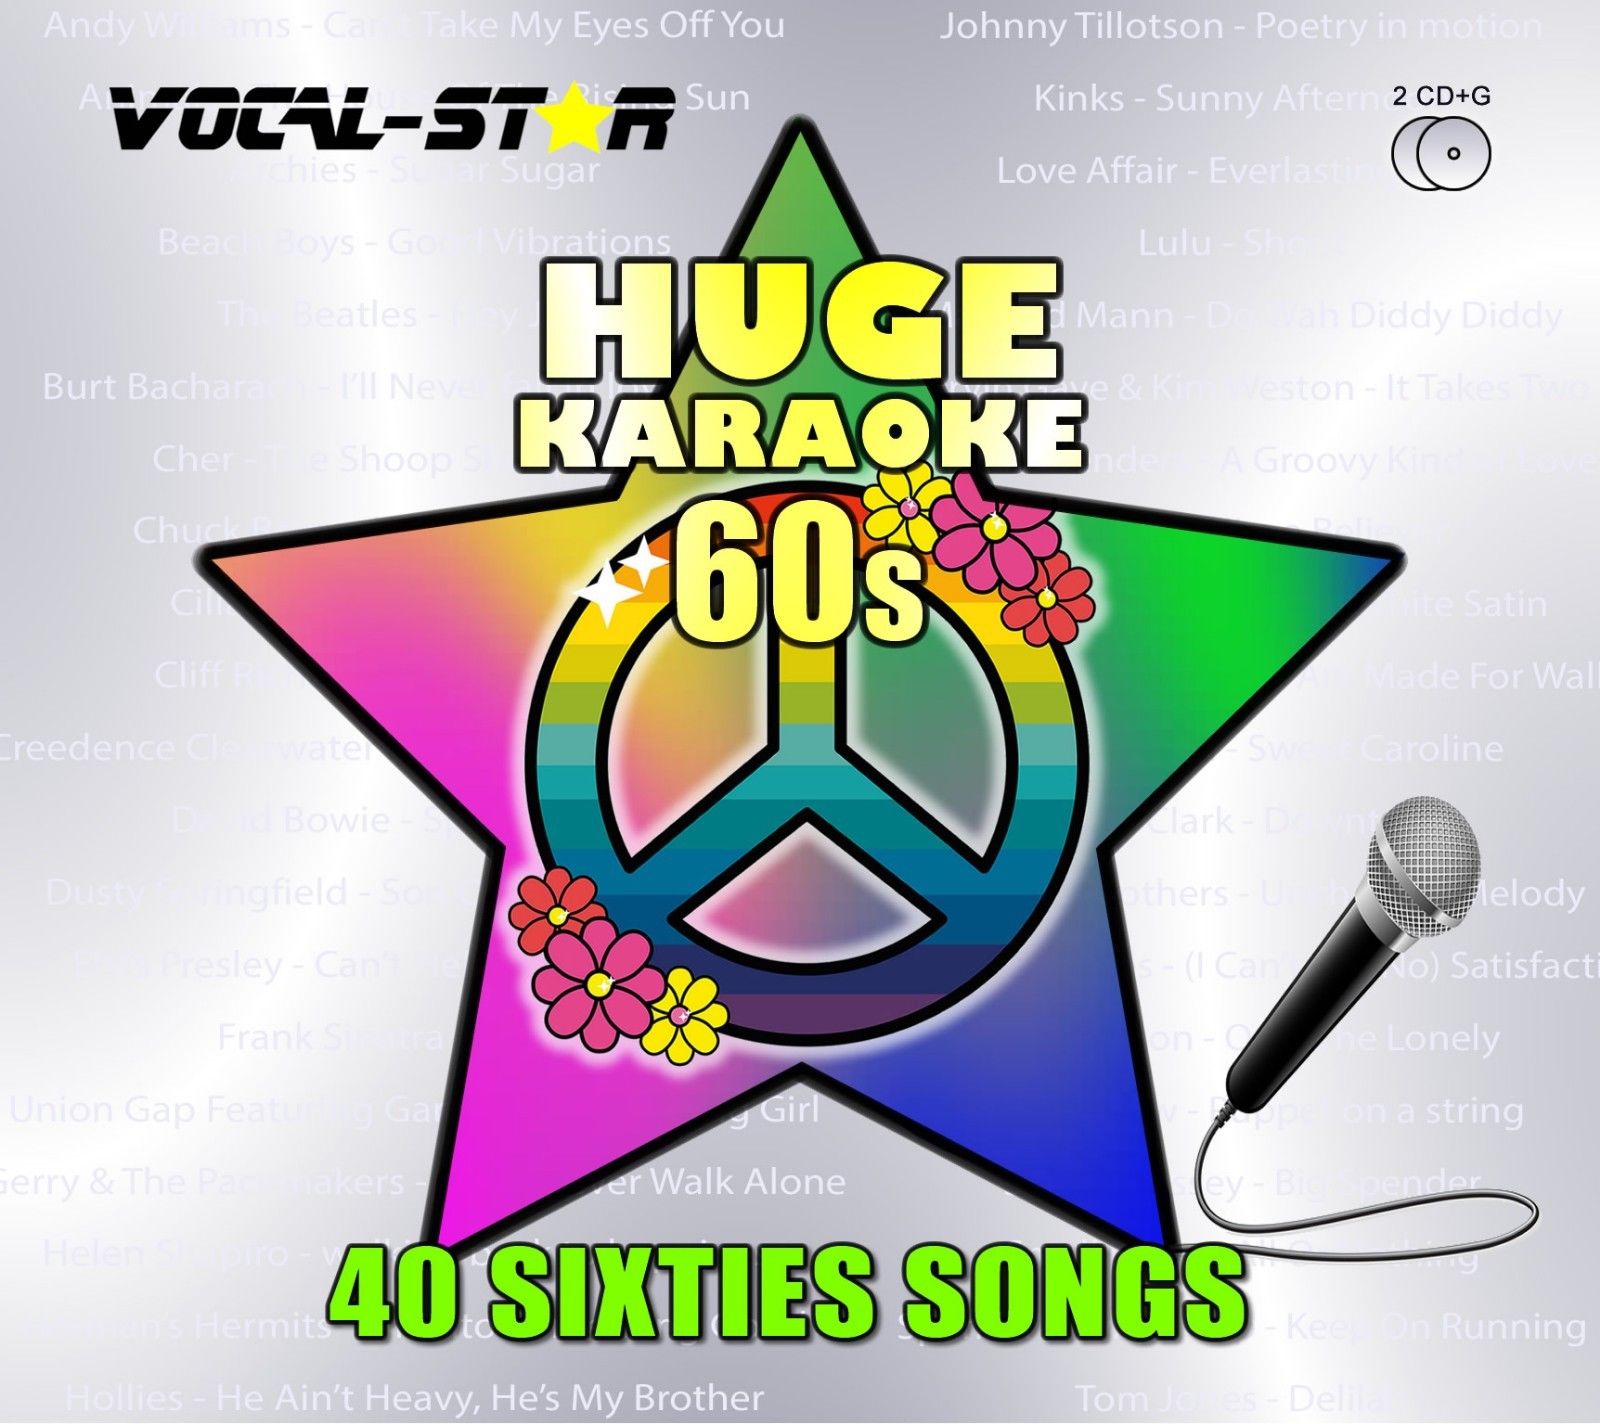 Vocal-Star Huge Karaoke Hits of 60s - 40 Songs - 2 CDG Disc Set